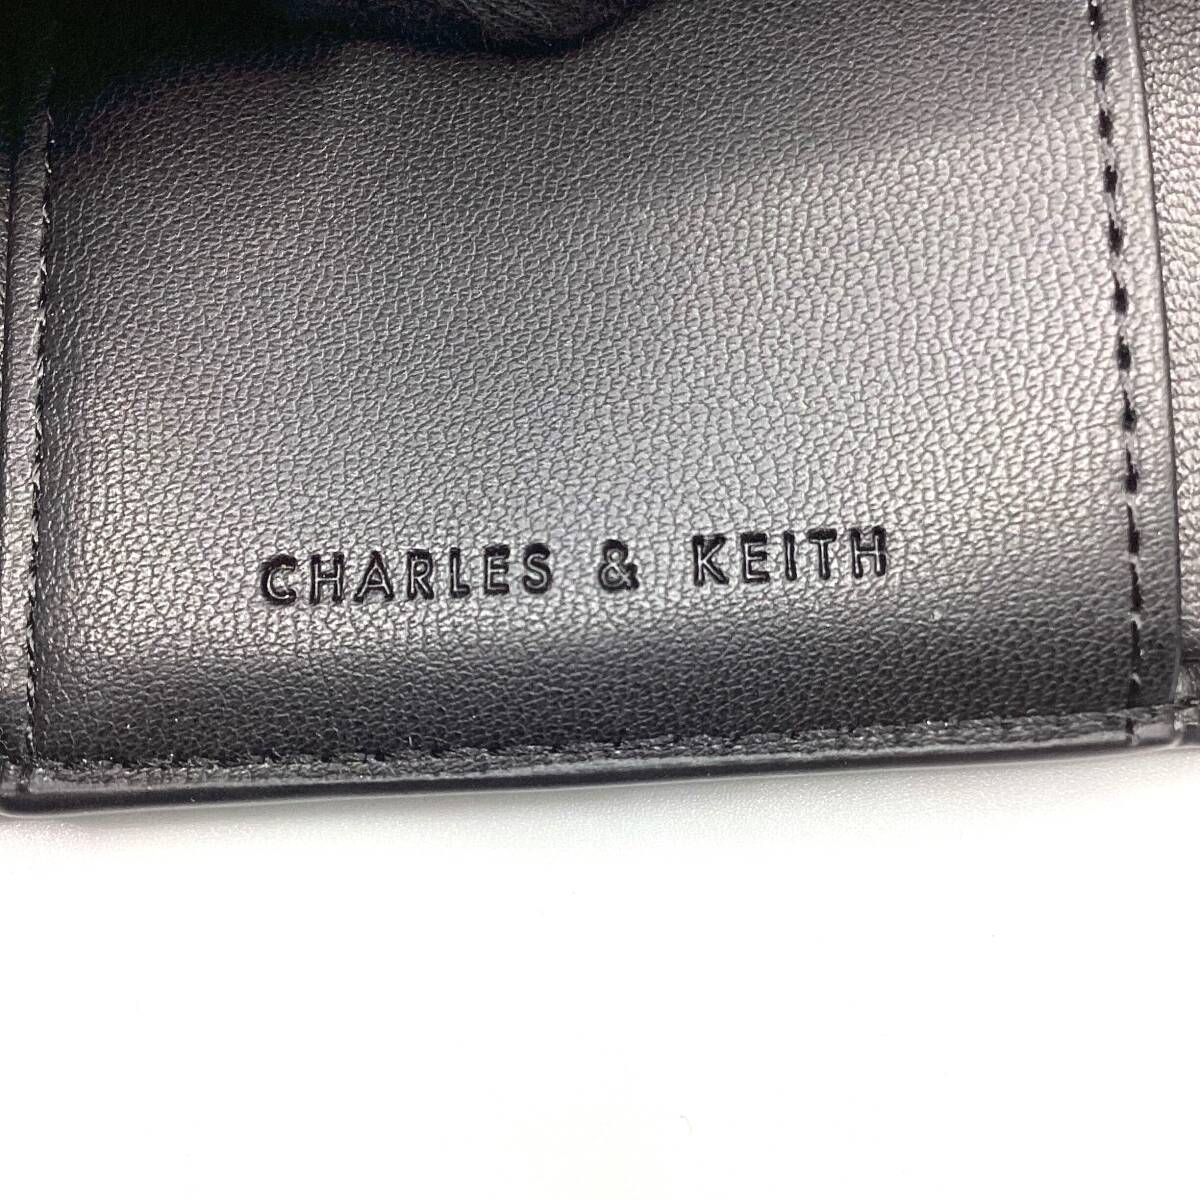 CHARLES & KEITH チャールズアンドキース ブレアメタリックアクセント ショートウォレット 三つ折り財布 ブラック ★二次流通品★_ロゴ